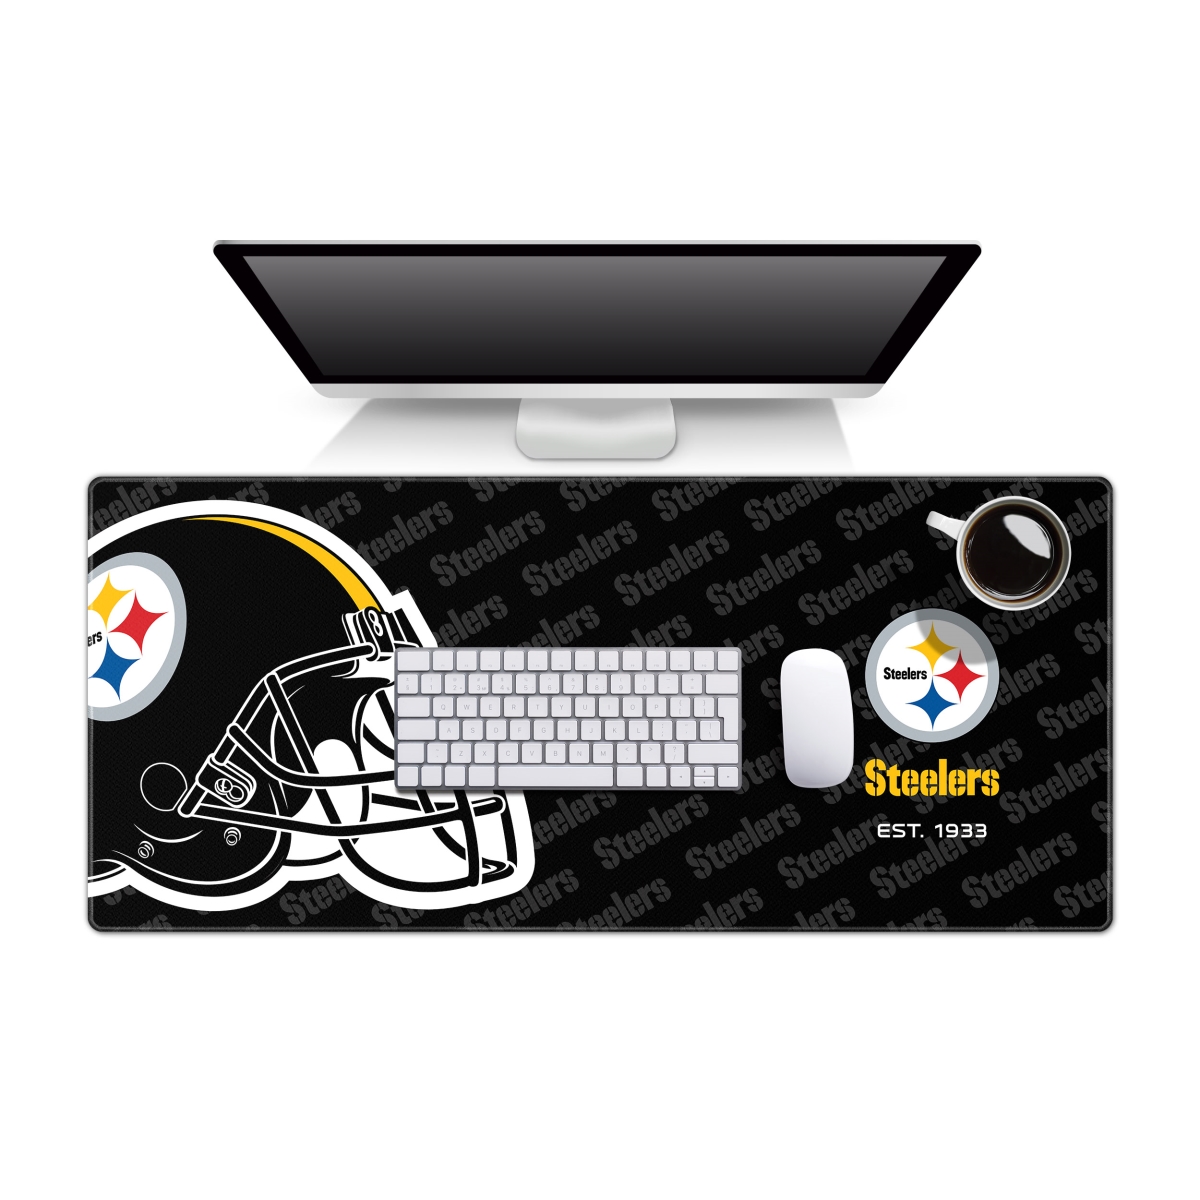 YouTheFan 1901178 35.4 x 15.7 in. Pittsburgh Steelers Logo Desk Pad